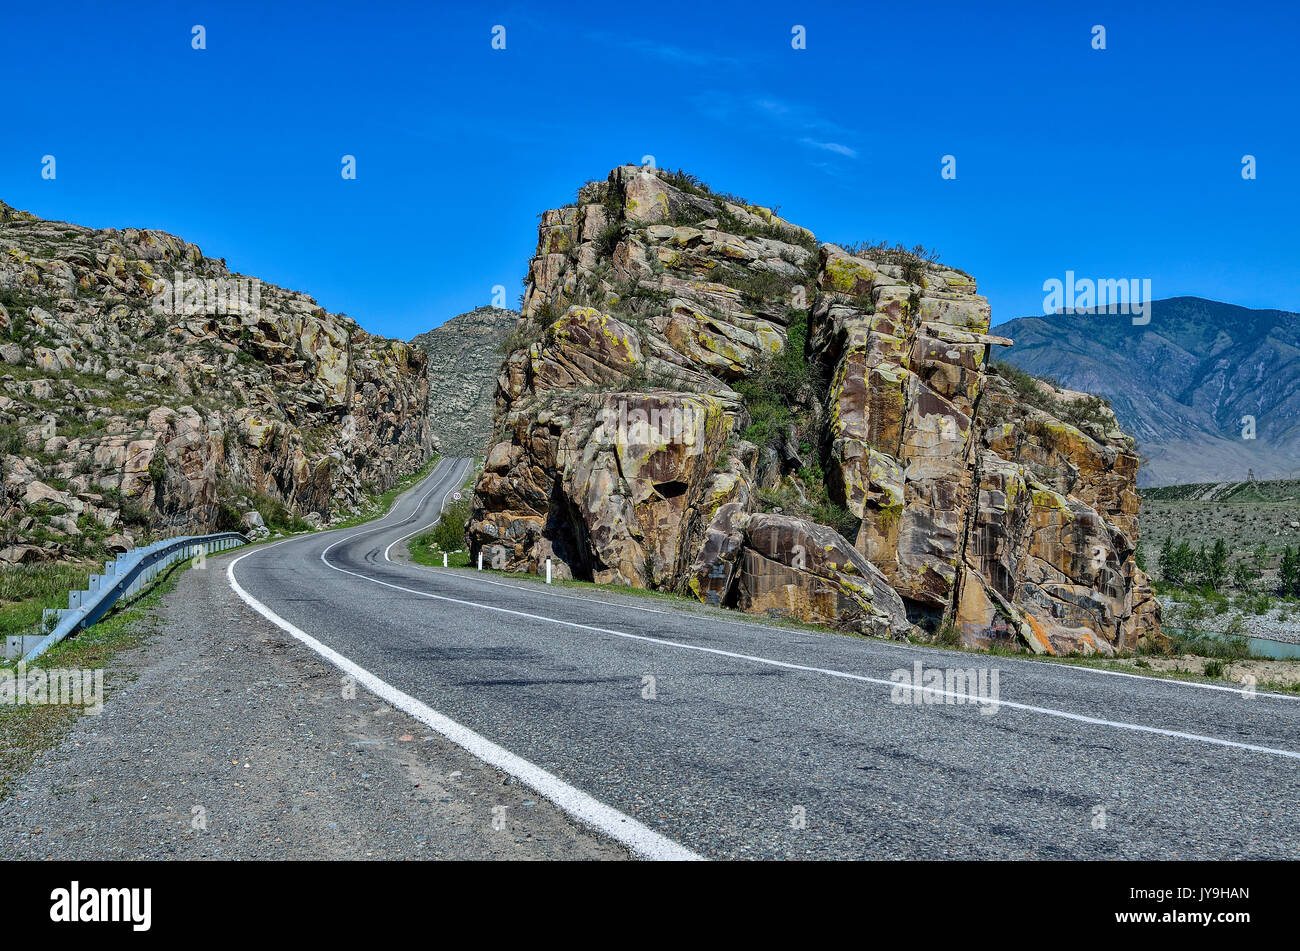 Paisaje de montaña - camino pavimentado en coloridas rocas de Altai. Tracto Chuysky - uno de los más bellos paisajes escénicos en Rusia Foto de stock